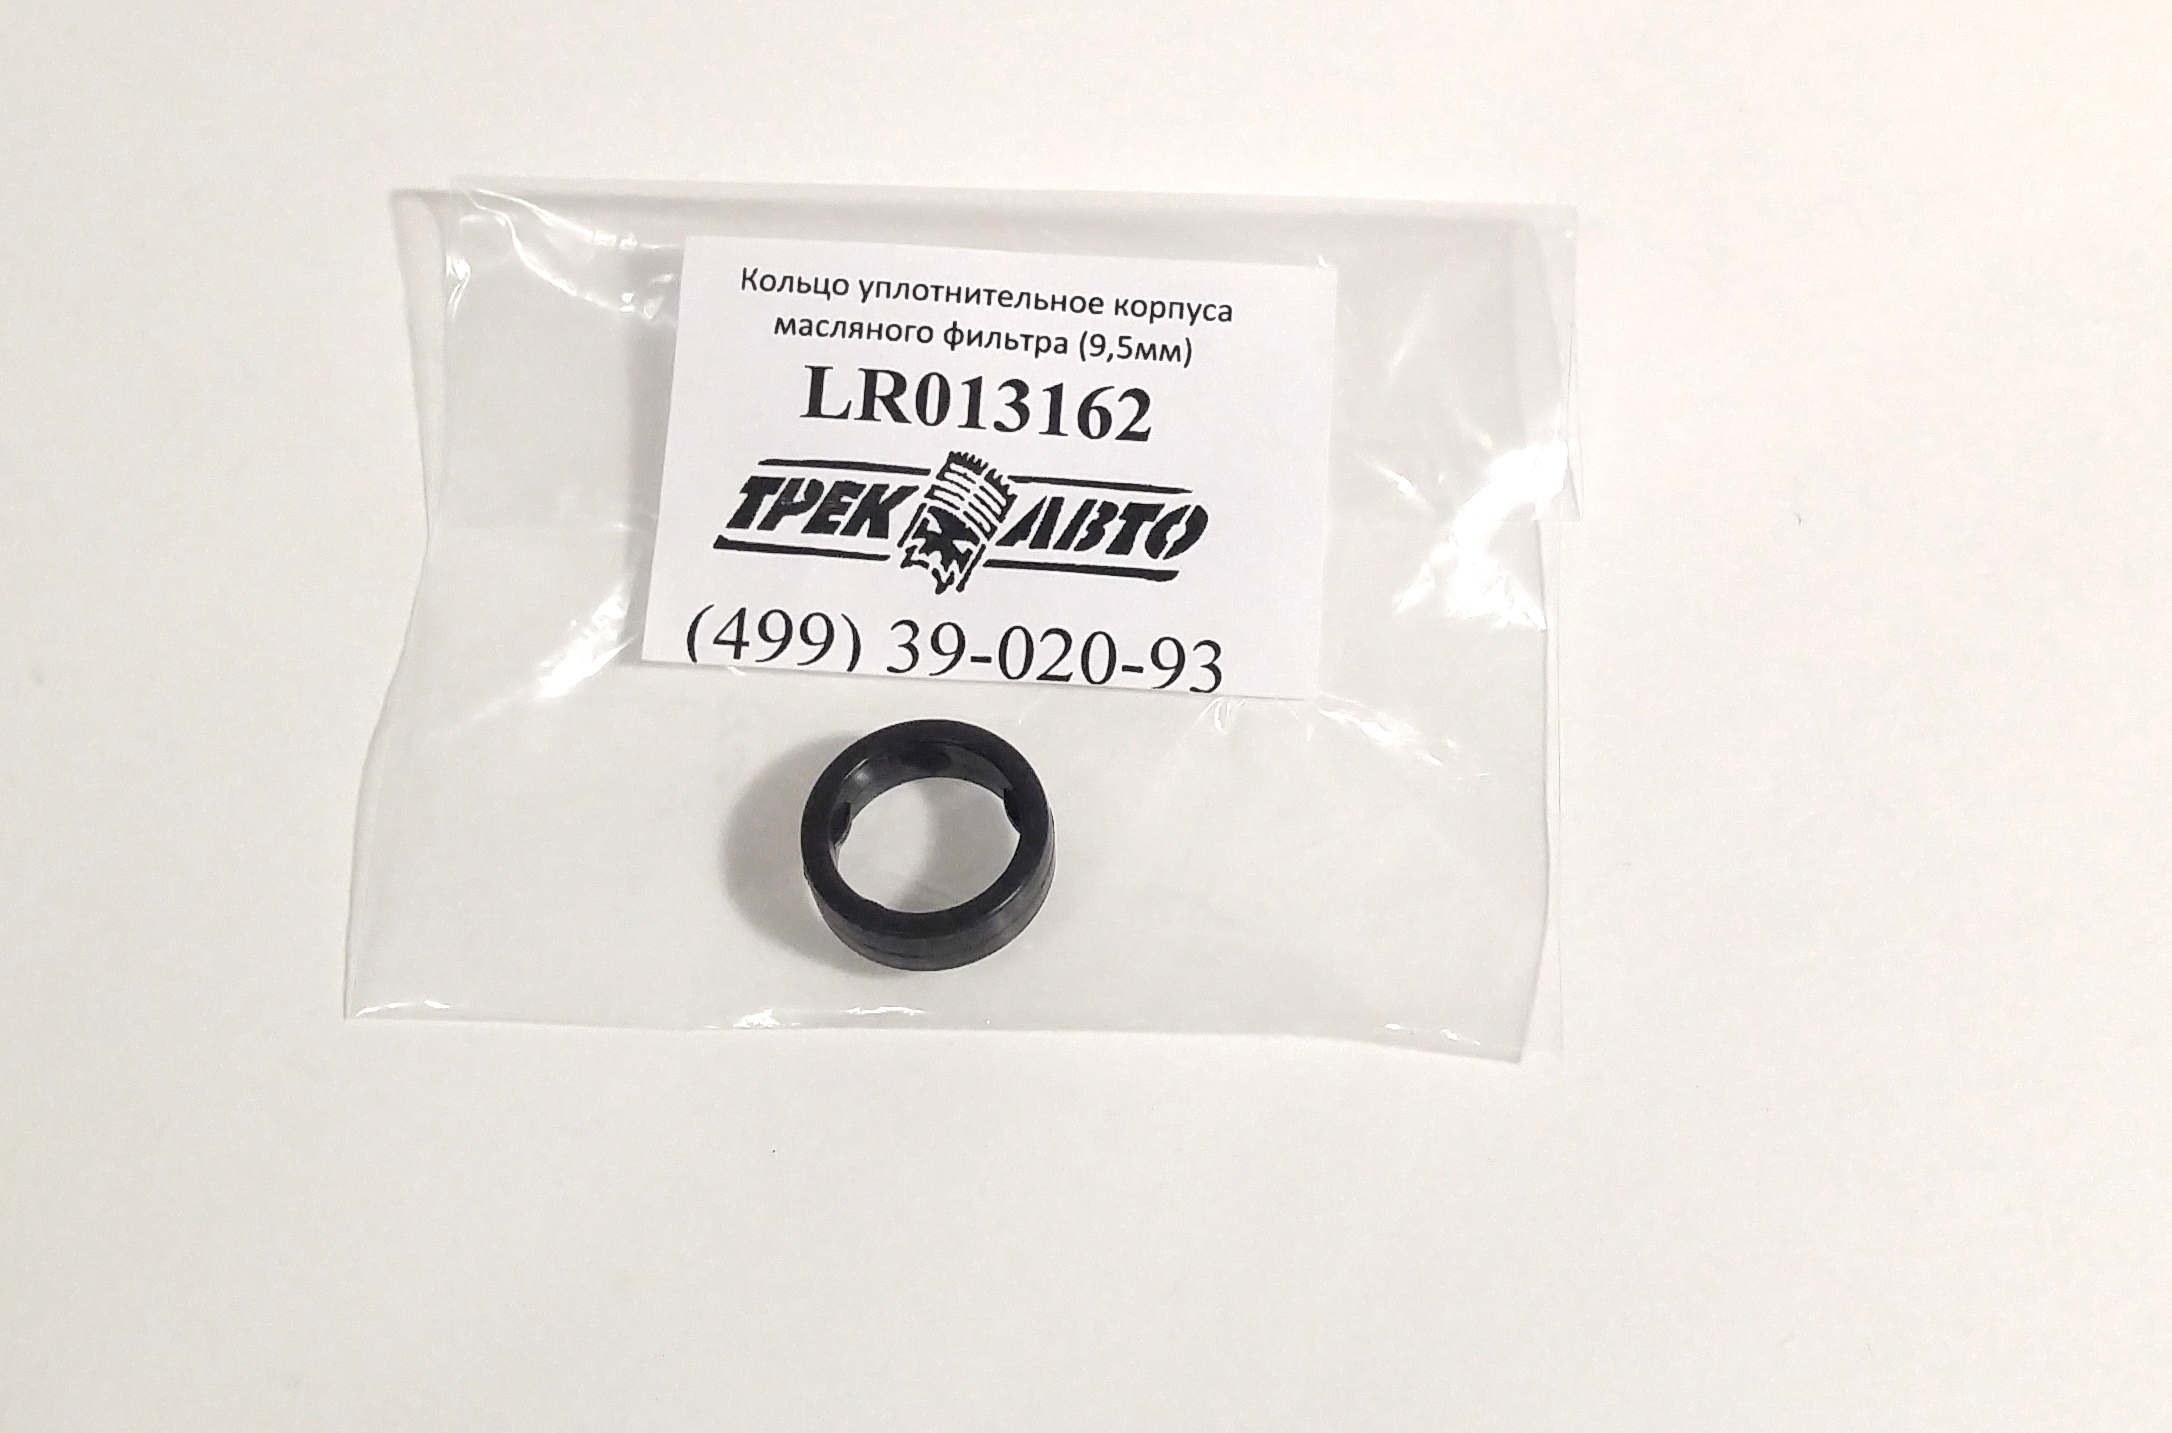 Кольцо уплотнительное корпуса маслянного фильтра (9,5мм) 3.0TD (LR013162||YIWU)